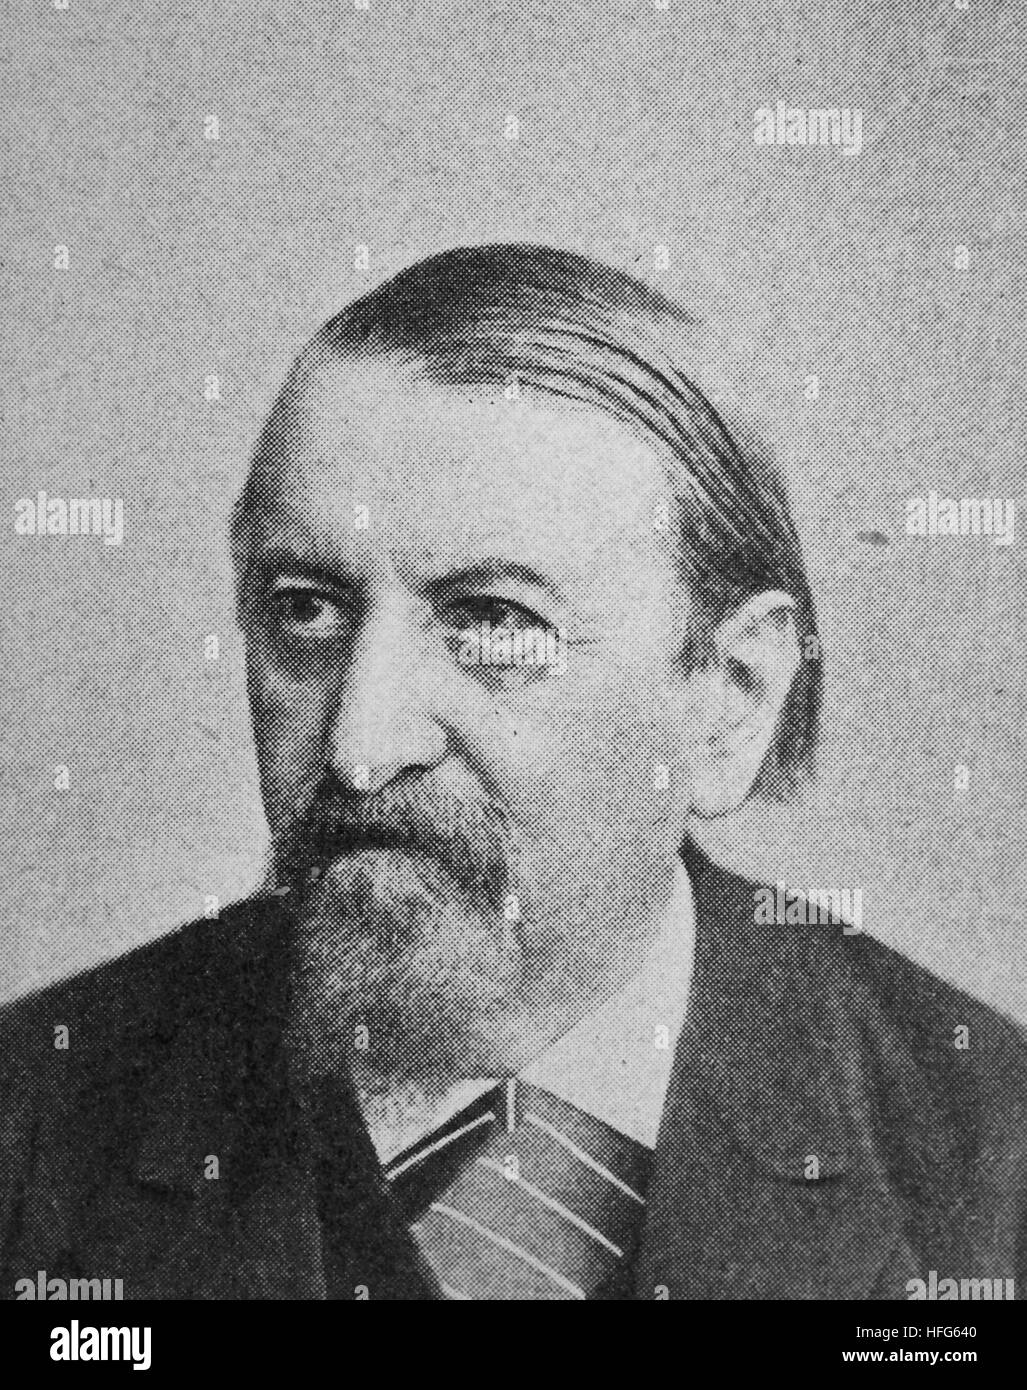 Rudolf Gottschall, wurde 1823-1909, ein deutscher Dichter, Dramatiker, literarischer Kritiker und Literaturhistoriker, Reproduktion Foto aus dem Jahr 1895, digital verbessert Stockfoto